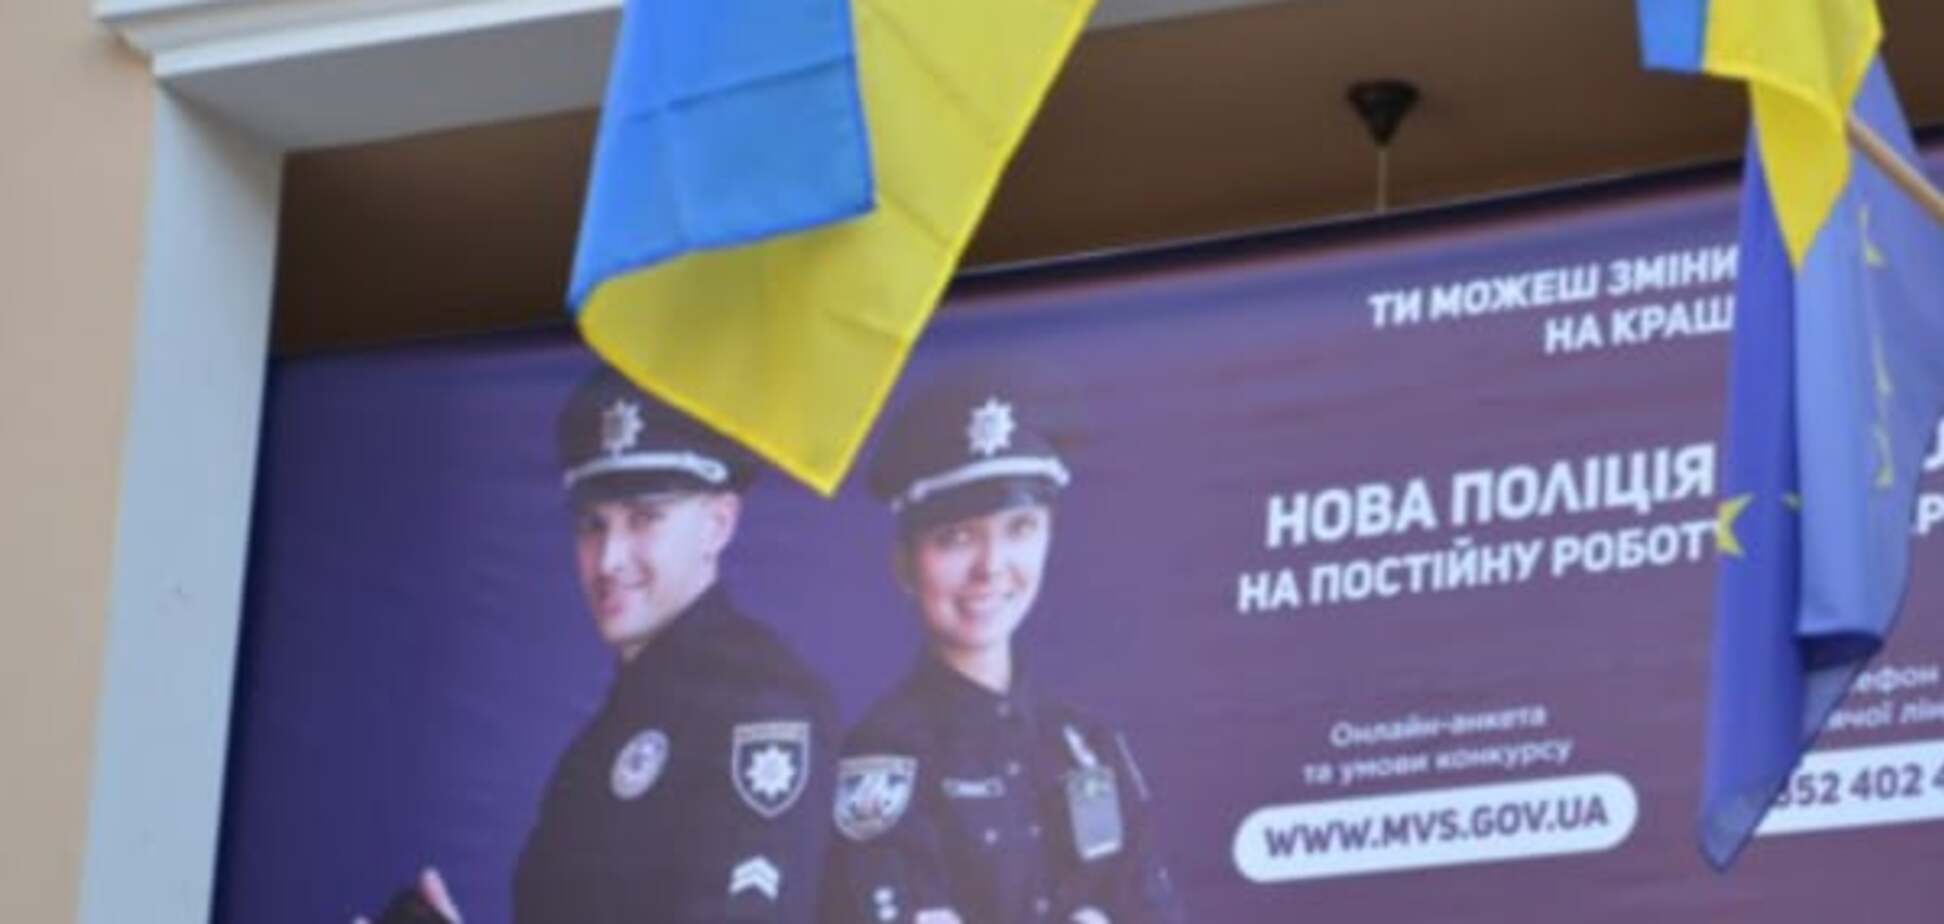 Каждая четвертая – девушка: в Тернополе стартовал набор в полицию. Фото и видеофакт